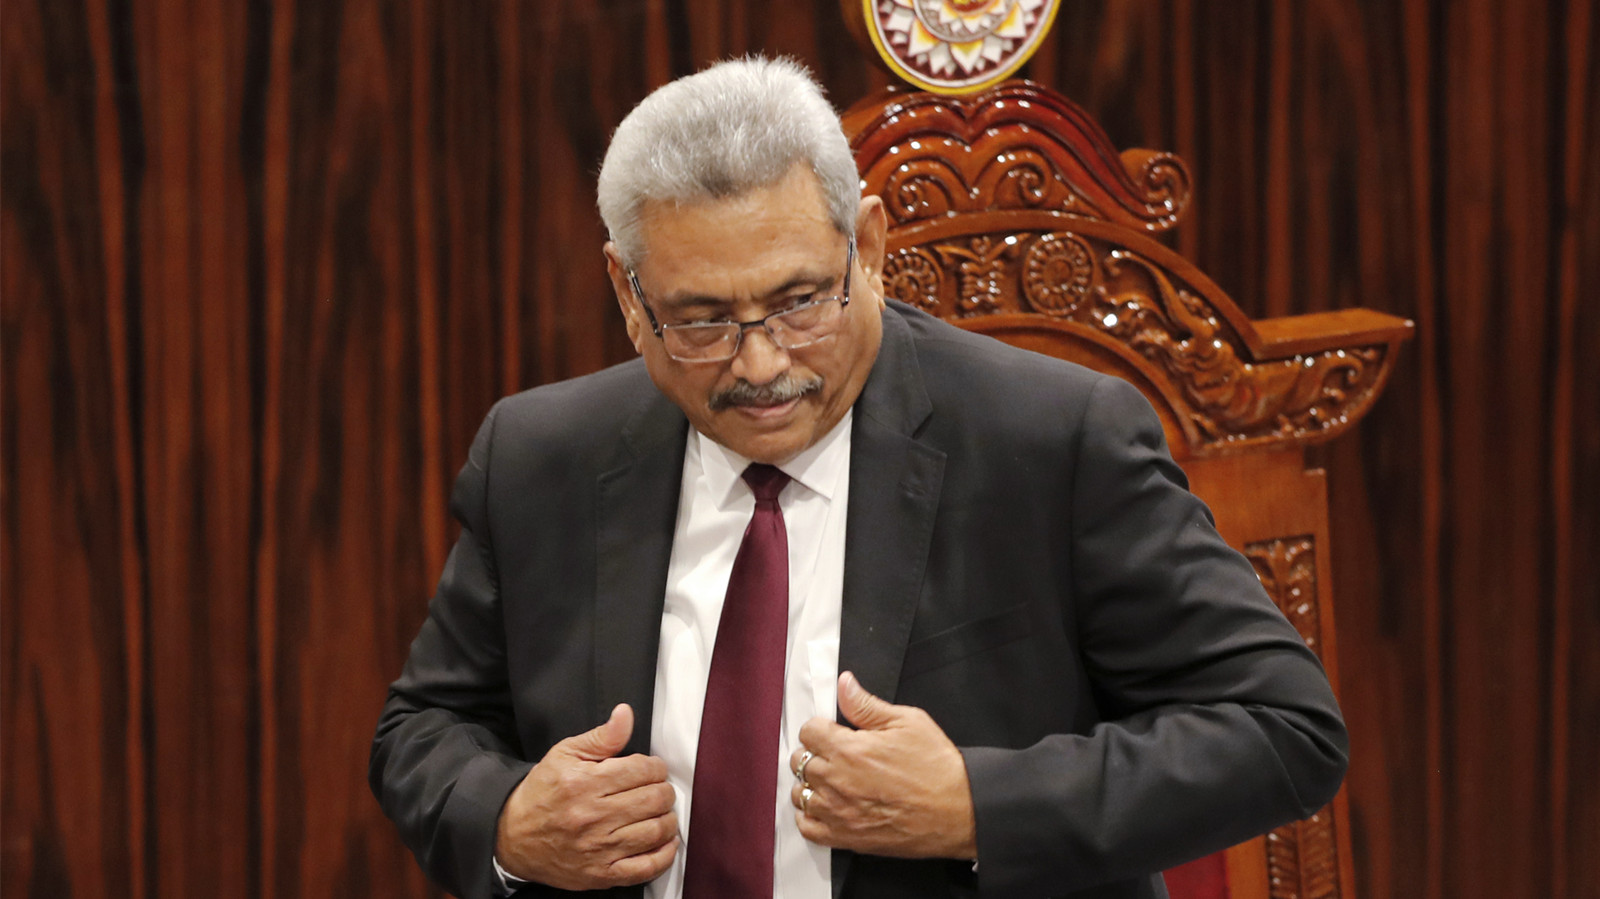 斯里蘭卡總統正式辭去職務 議長要求其遞交簽字版辭職信原件